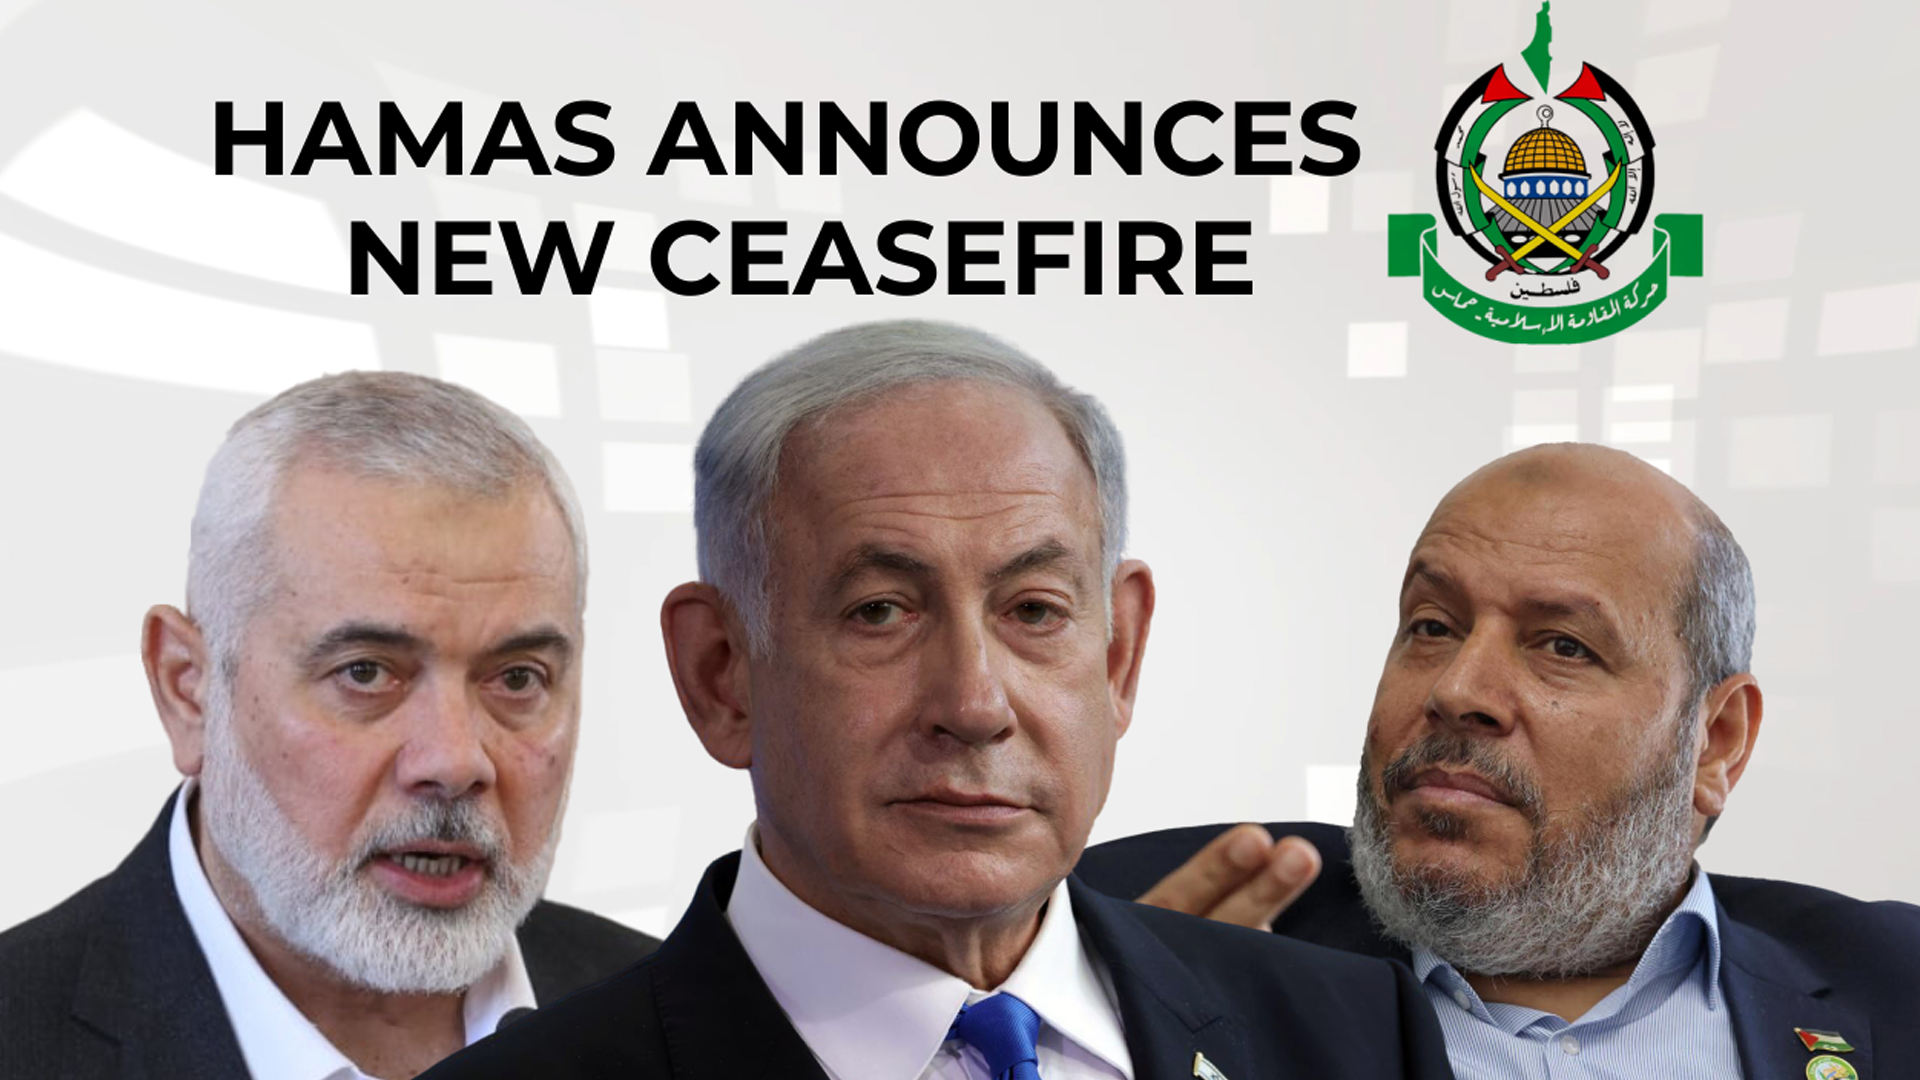 Hamas announces new ceasefire